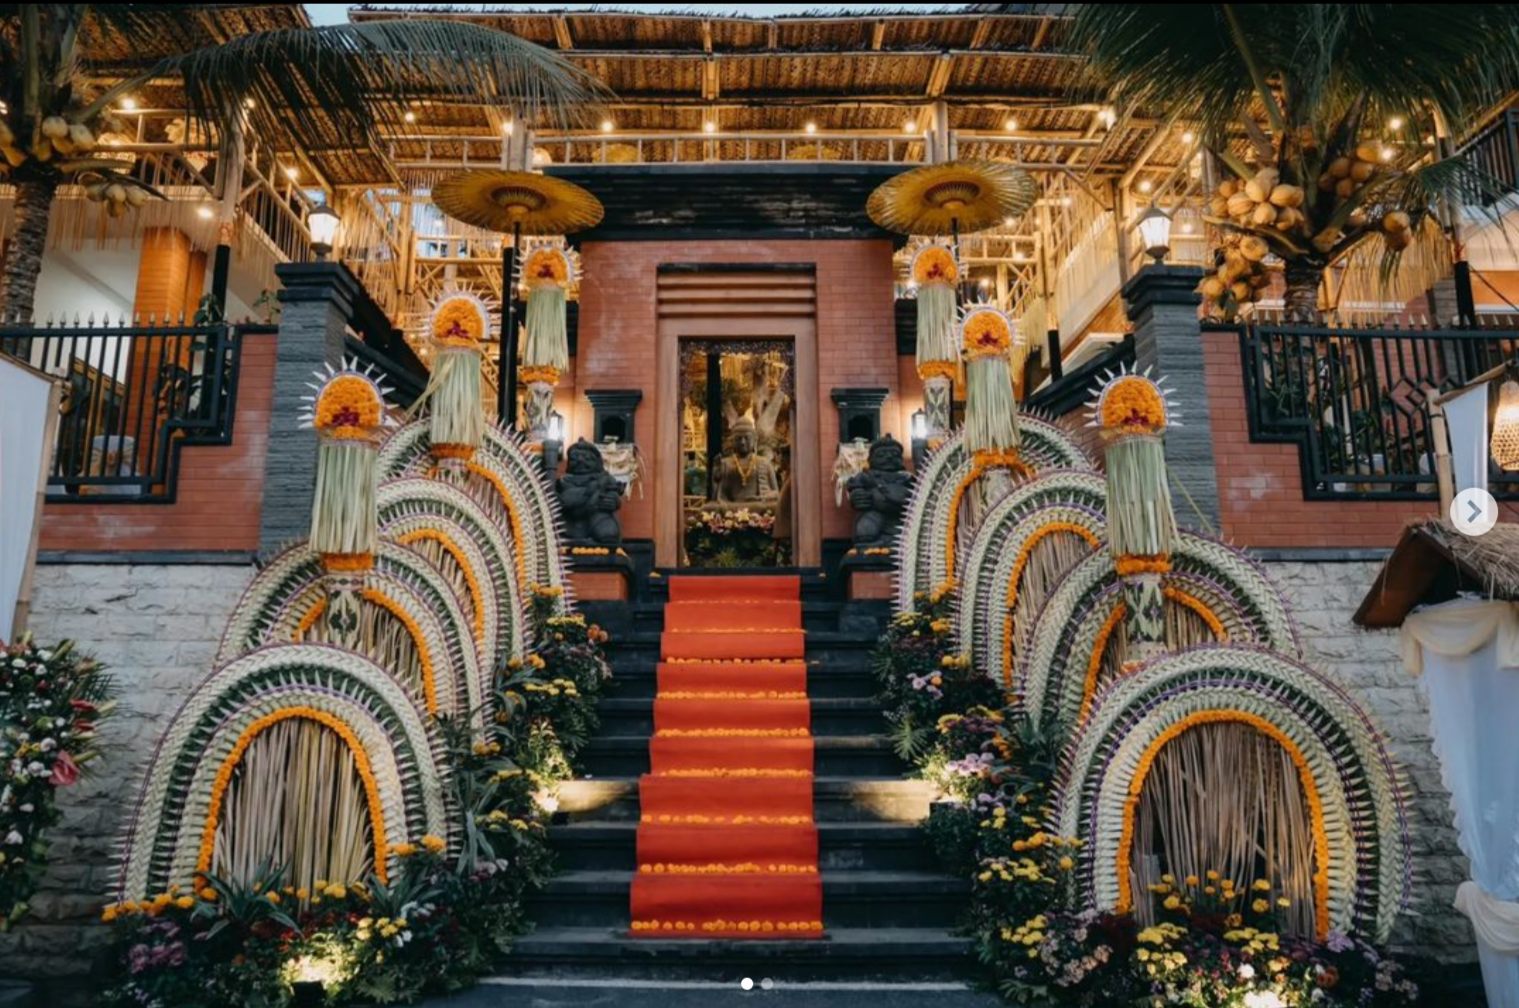 Gambar Plengkuran Bali pada acara pernikahan